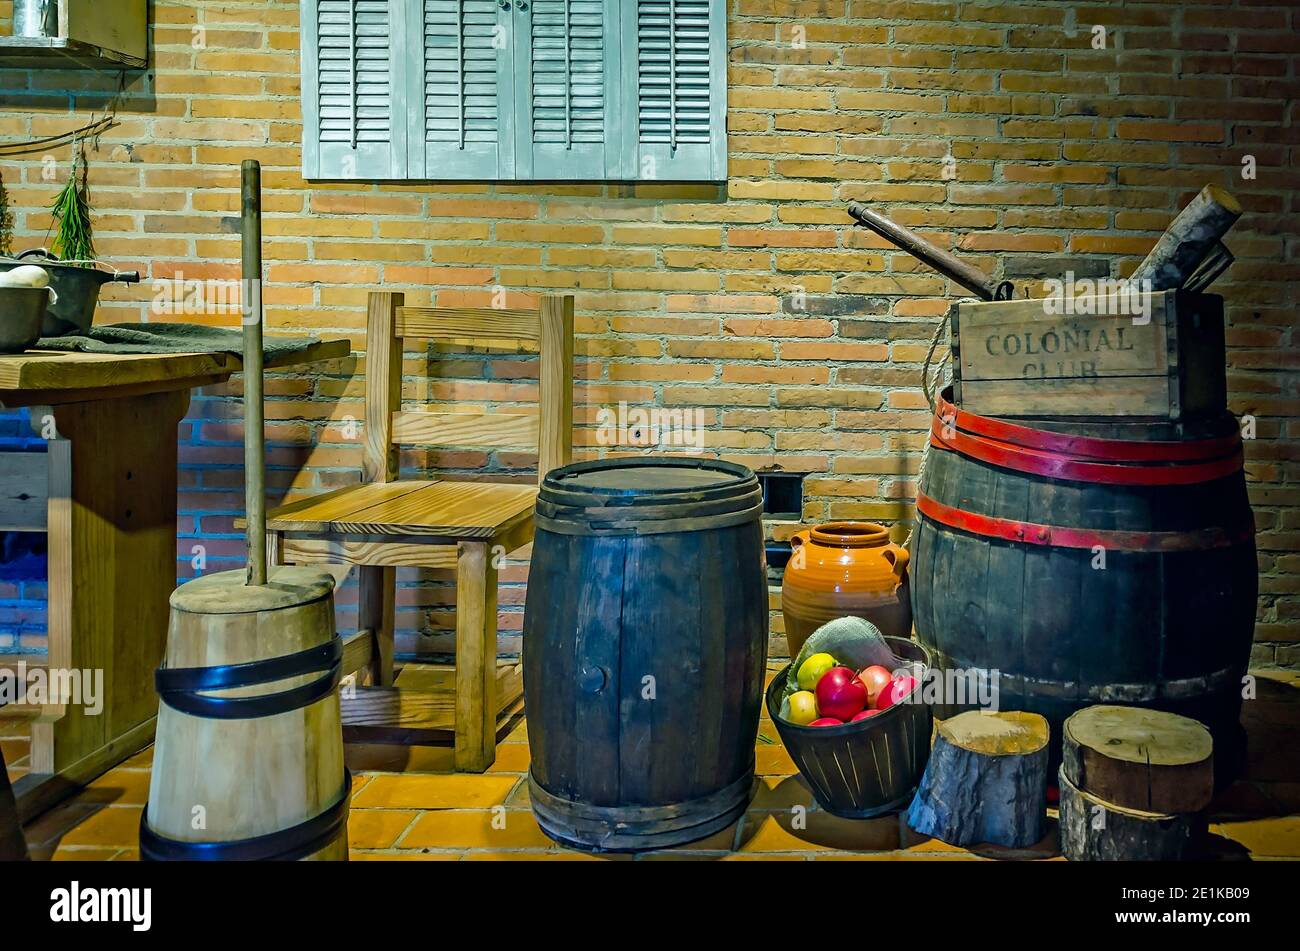 Des articles typiques de cuisine coloniale, y compris une urne antique de beurre, sont exposés au fort de Colonial Mobile à Mobile, Alabama. Banque D'Images